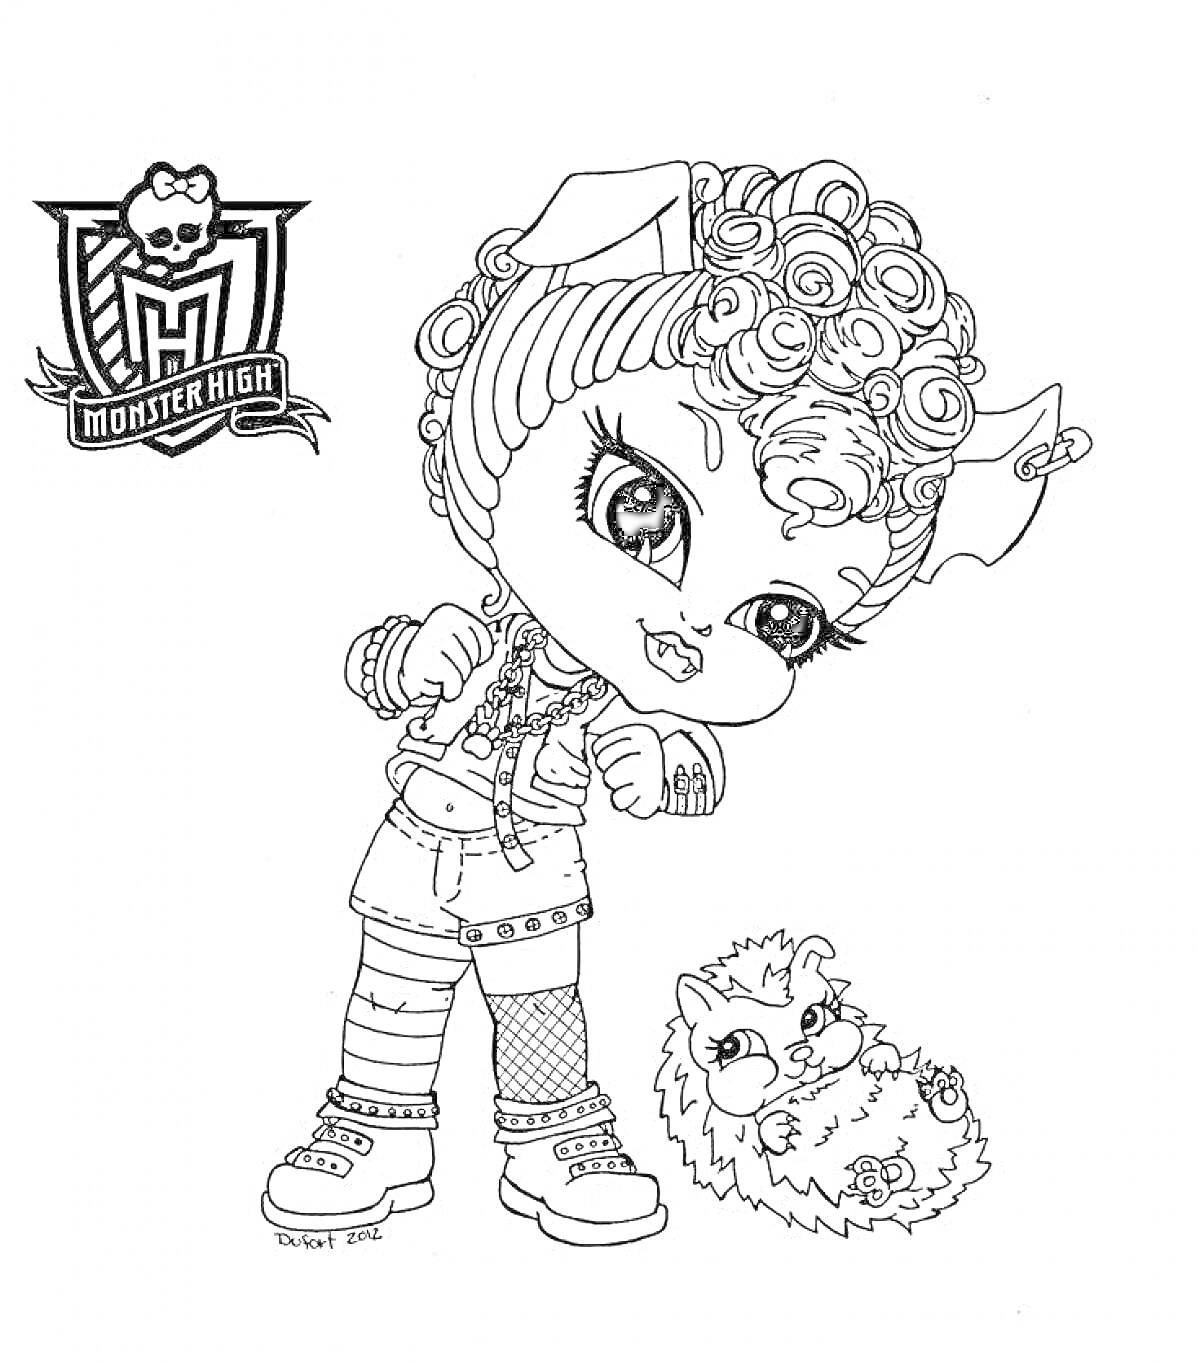 Раскраска Девочка-монстр с кудрявыми волосами и бантом в ушах, держащая руки в позе когтей, рядом с пушистым питомцем. Логотип Monster High в верхнем левом углу.